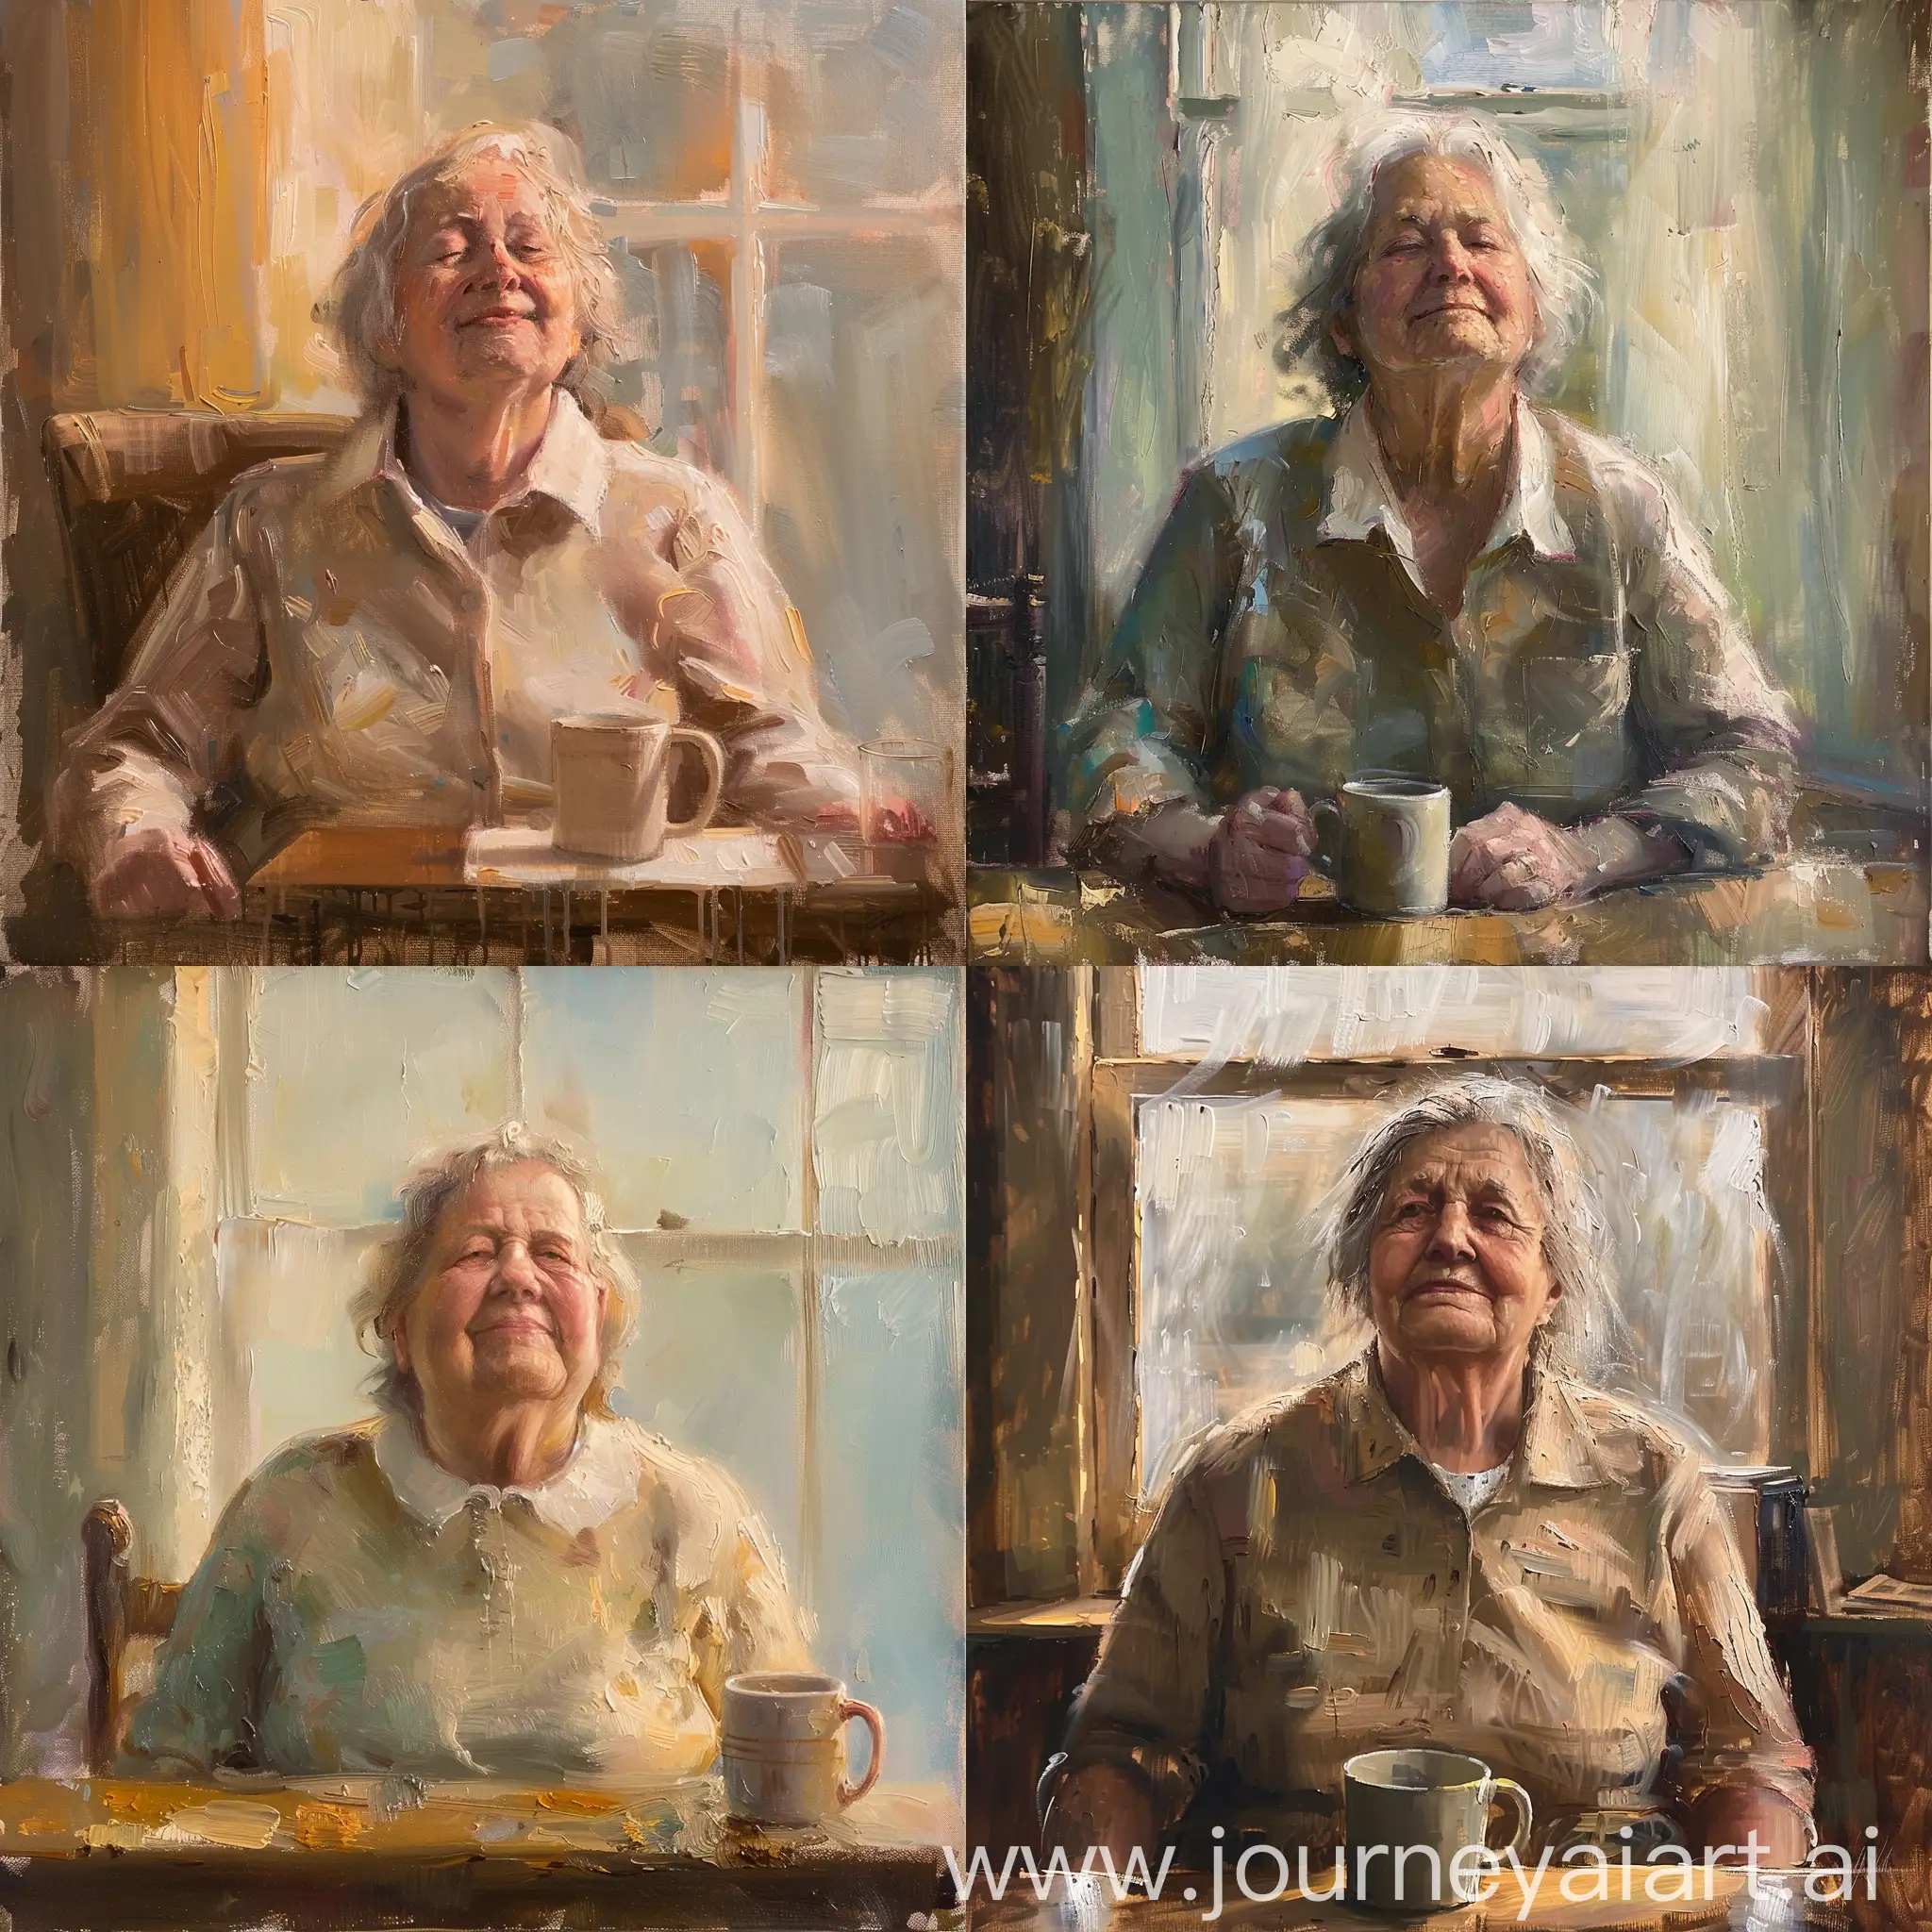 Joyful-Elderly-Woman-in-Mary-Cassatt-Style-Oil-Painting